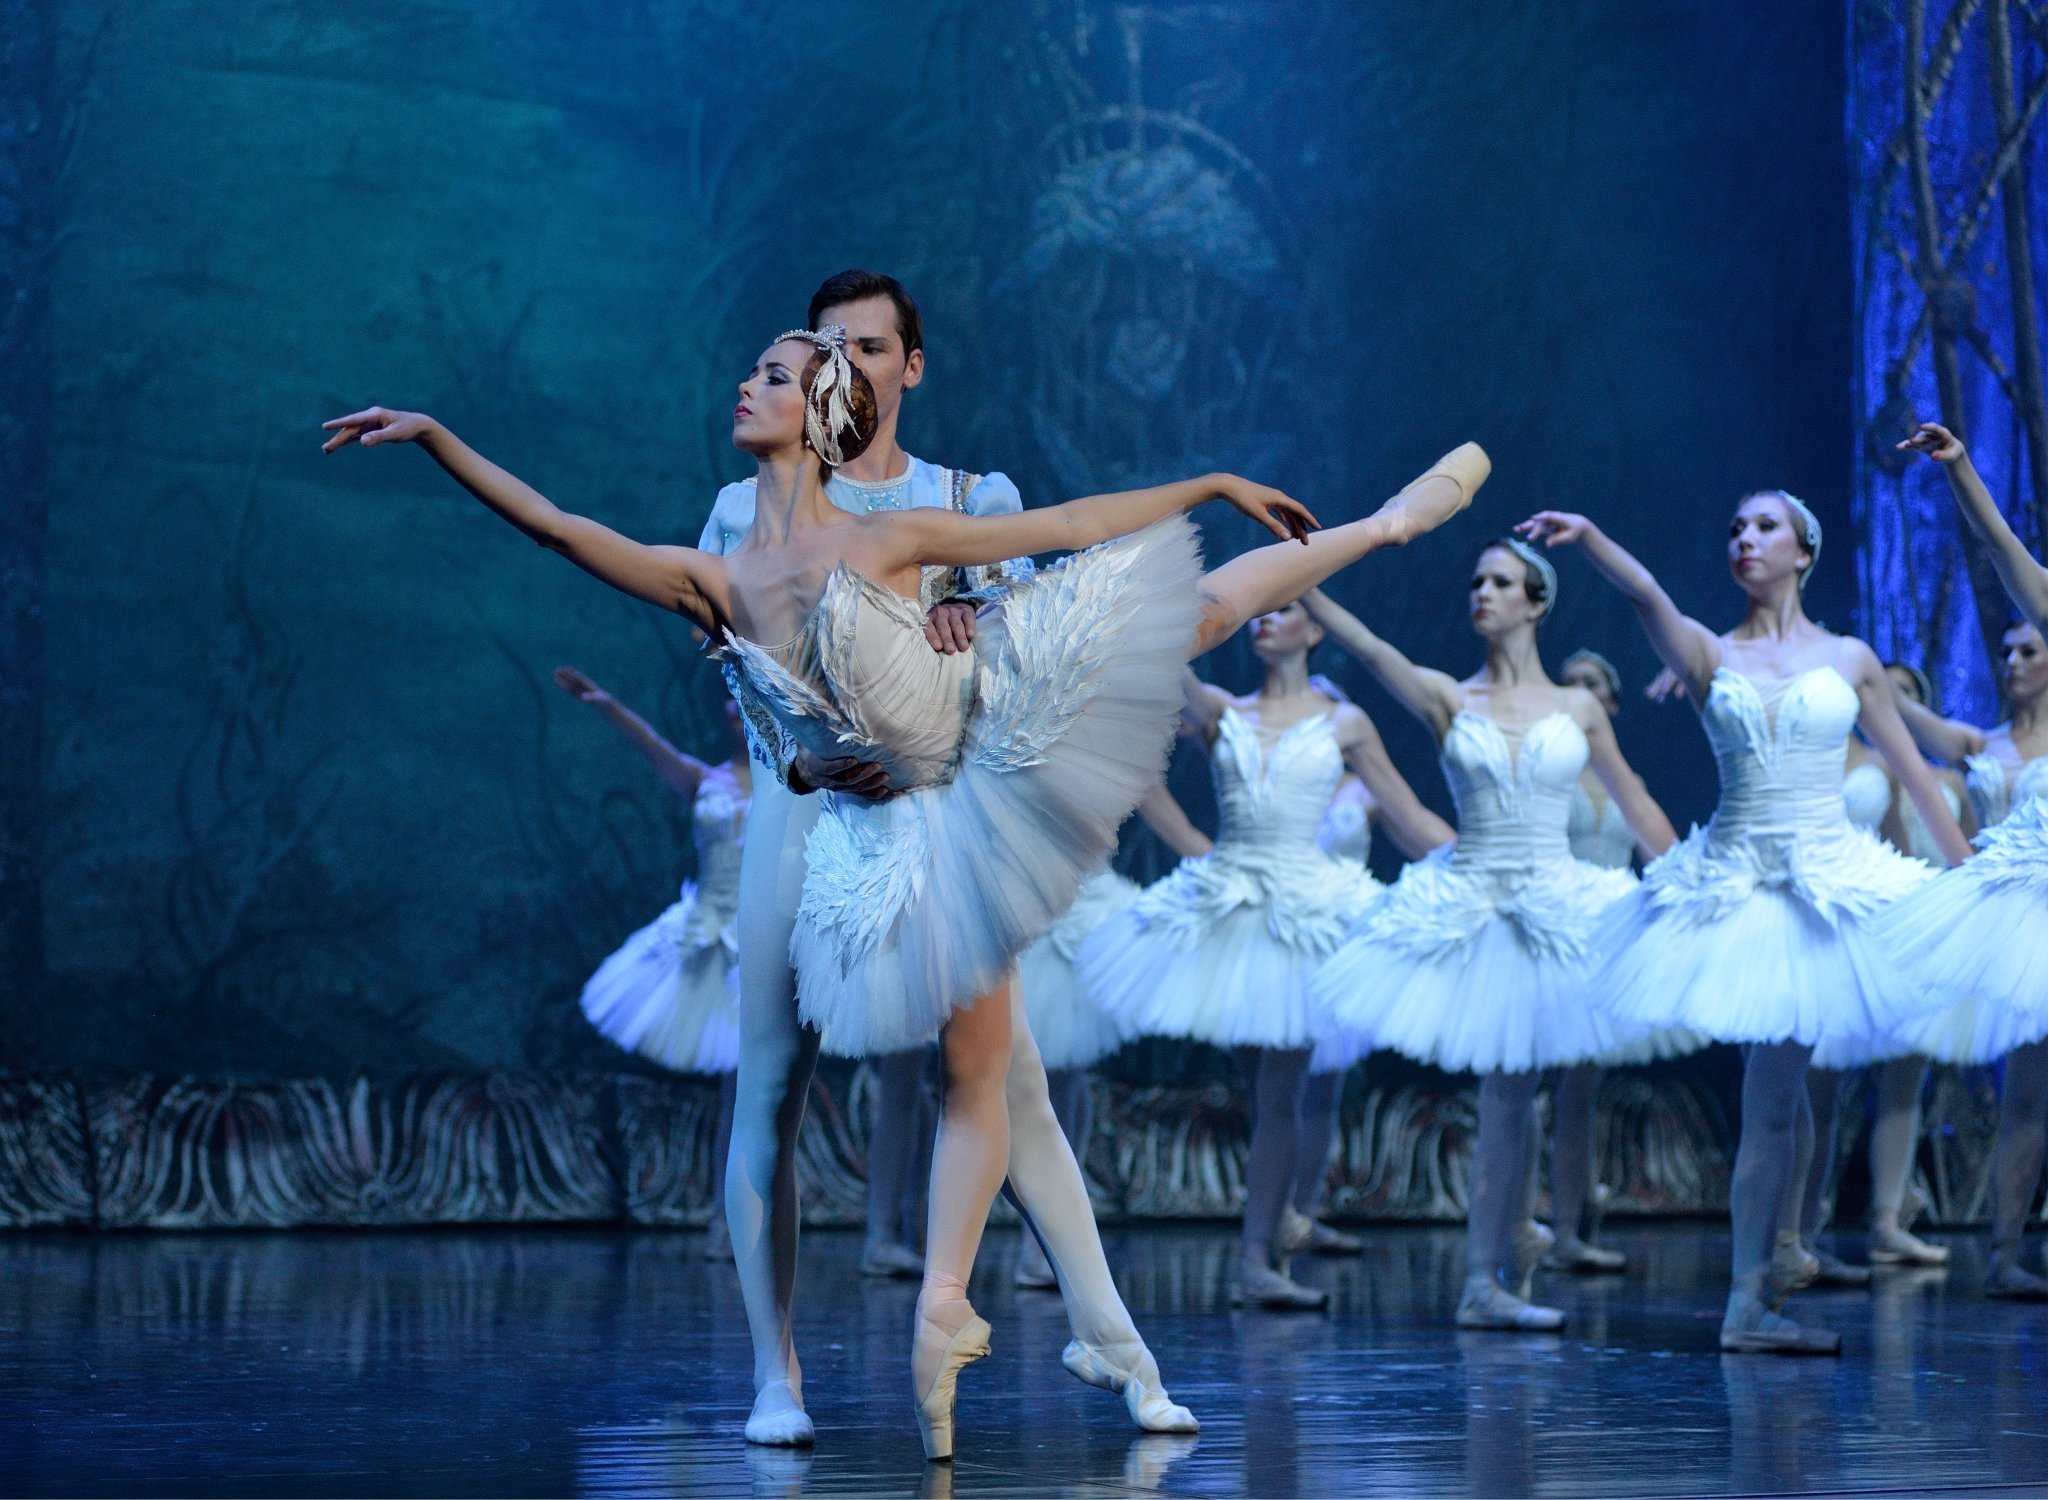 Имперский Русский балет Гедиминаса Таранды выступит в Ижевске с «Лебединым озером» 